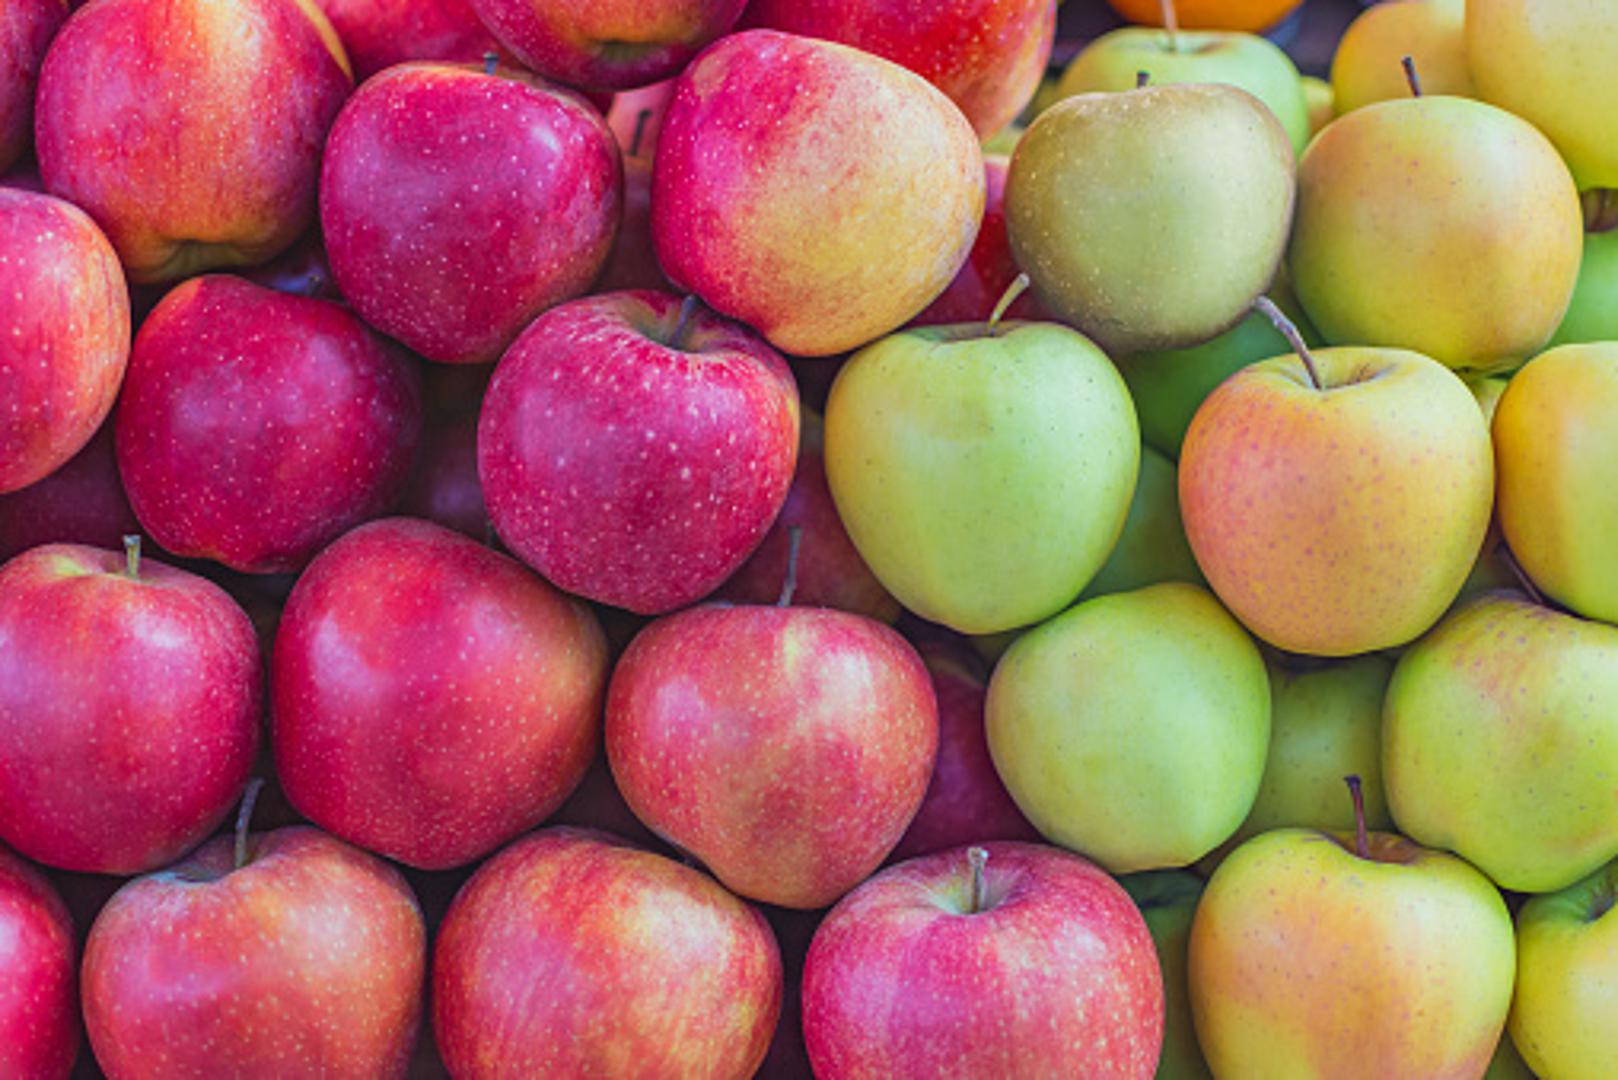 Jabuka sadrži u prosjeku 26 grama proteina, 81 grama ugljikohidrata i 40 grama dijetalnih vlakana, a ne sadrži masnoće i kolesterol. Osigurat će nam i važne vitamine i minerale poput kalcija, kalija, niacina, folata, tiamina, vitamina A, C, E i K.